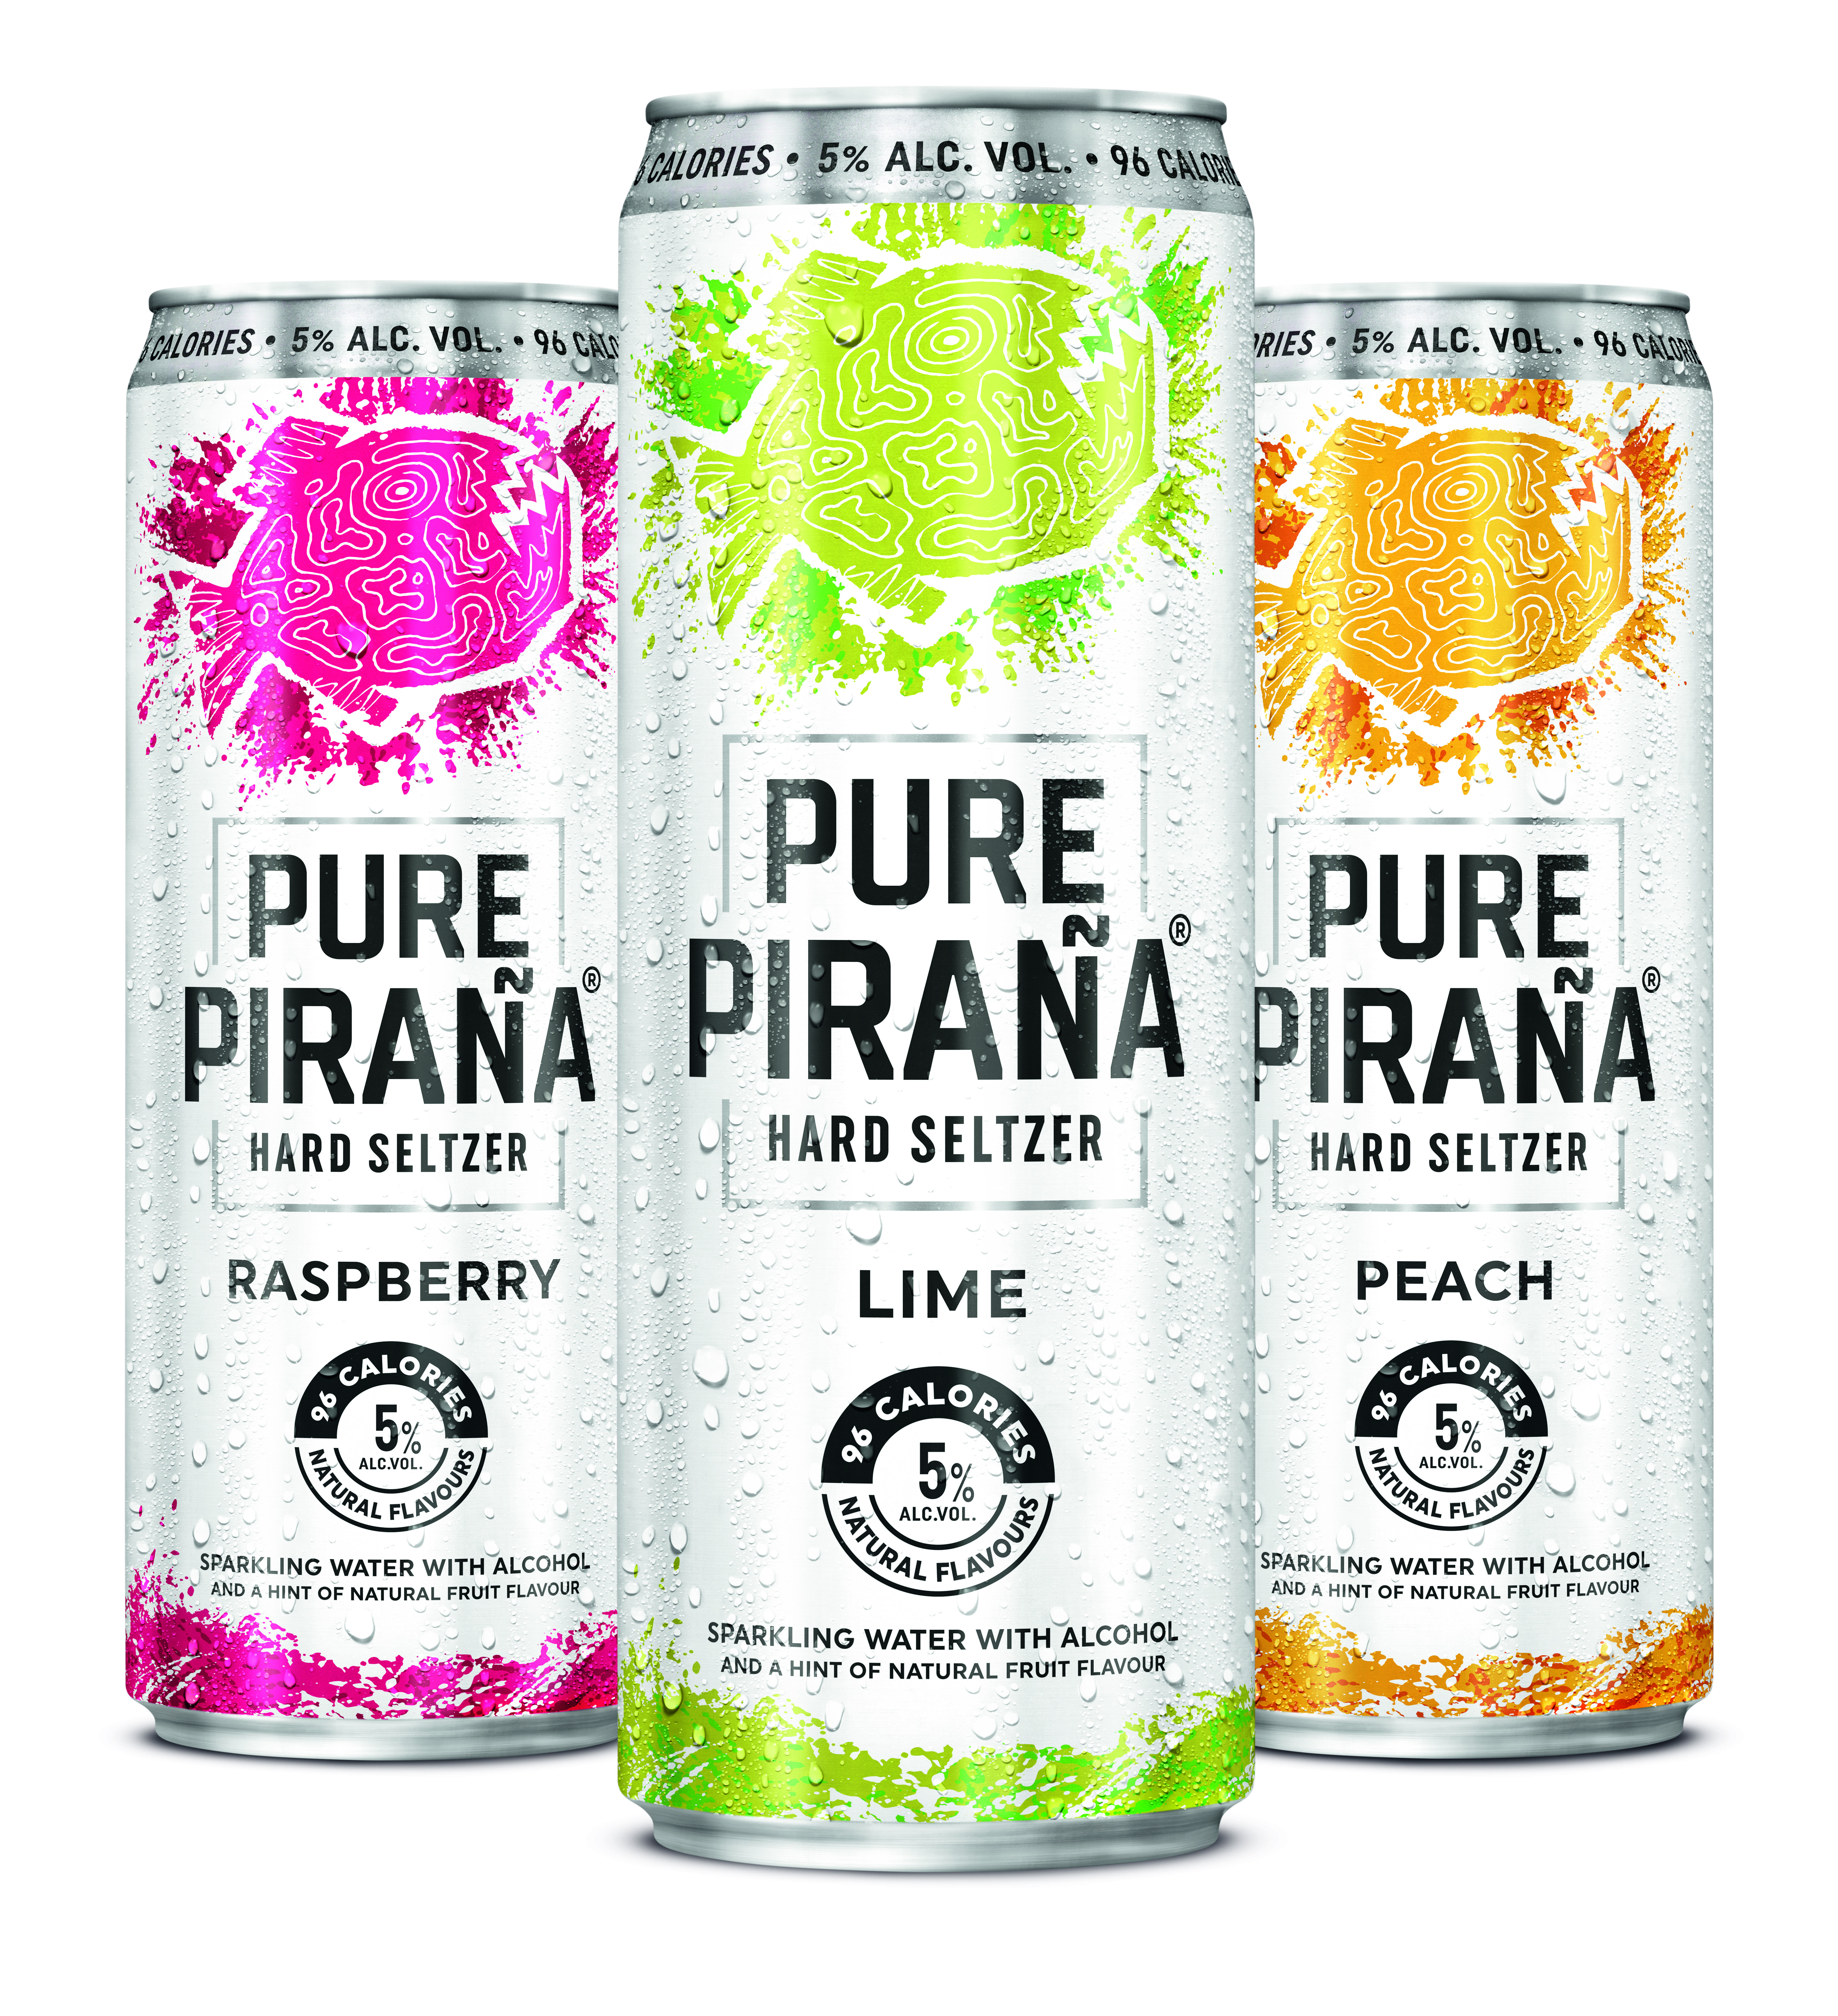 HEINEKEN launches new hard seltzer brand, Pure Piraña